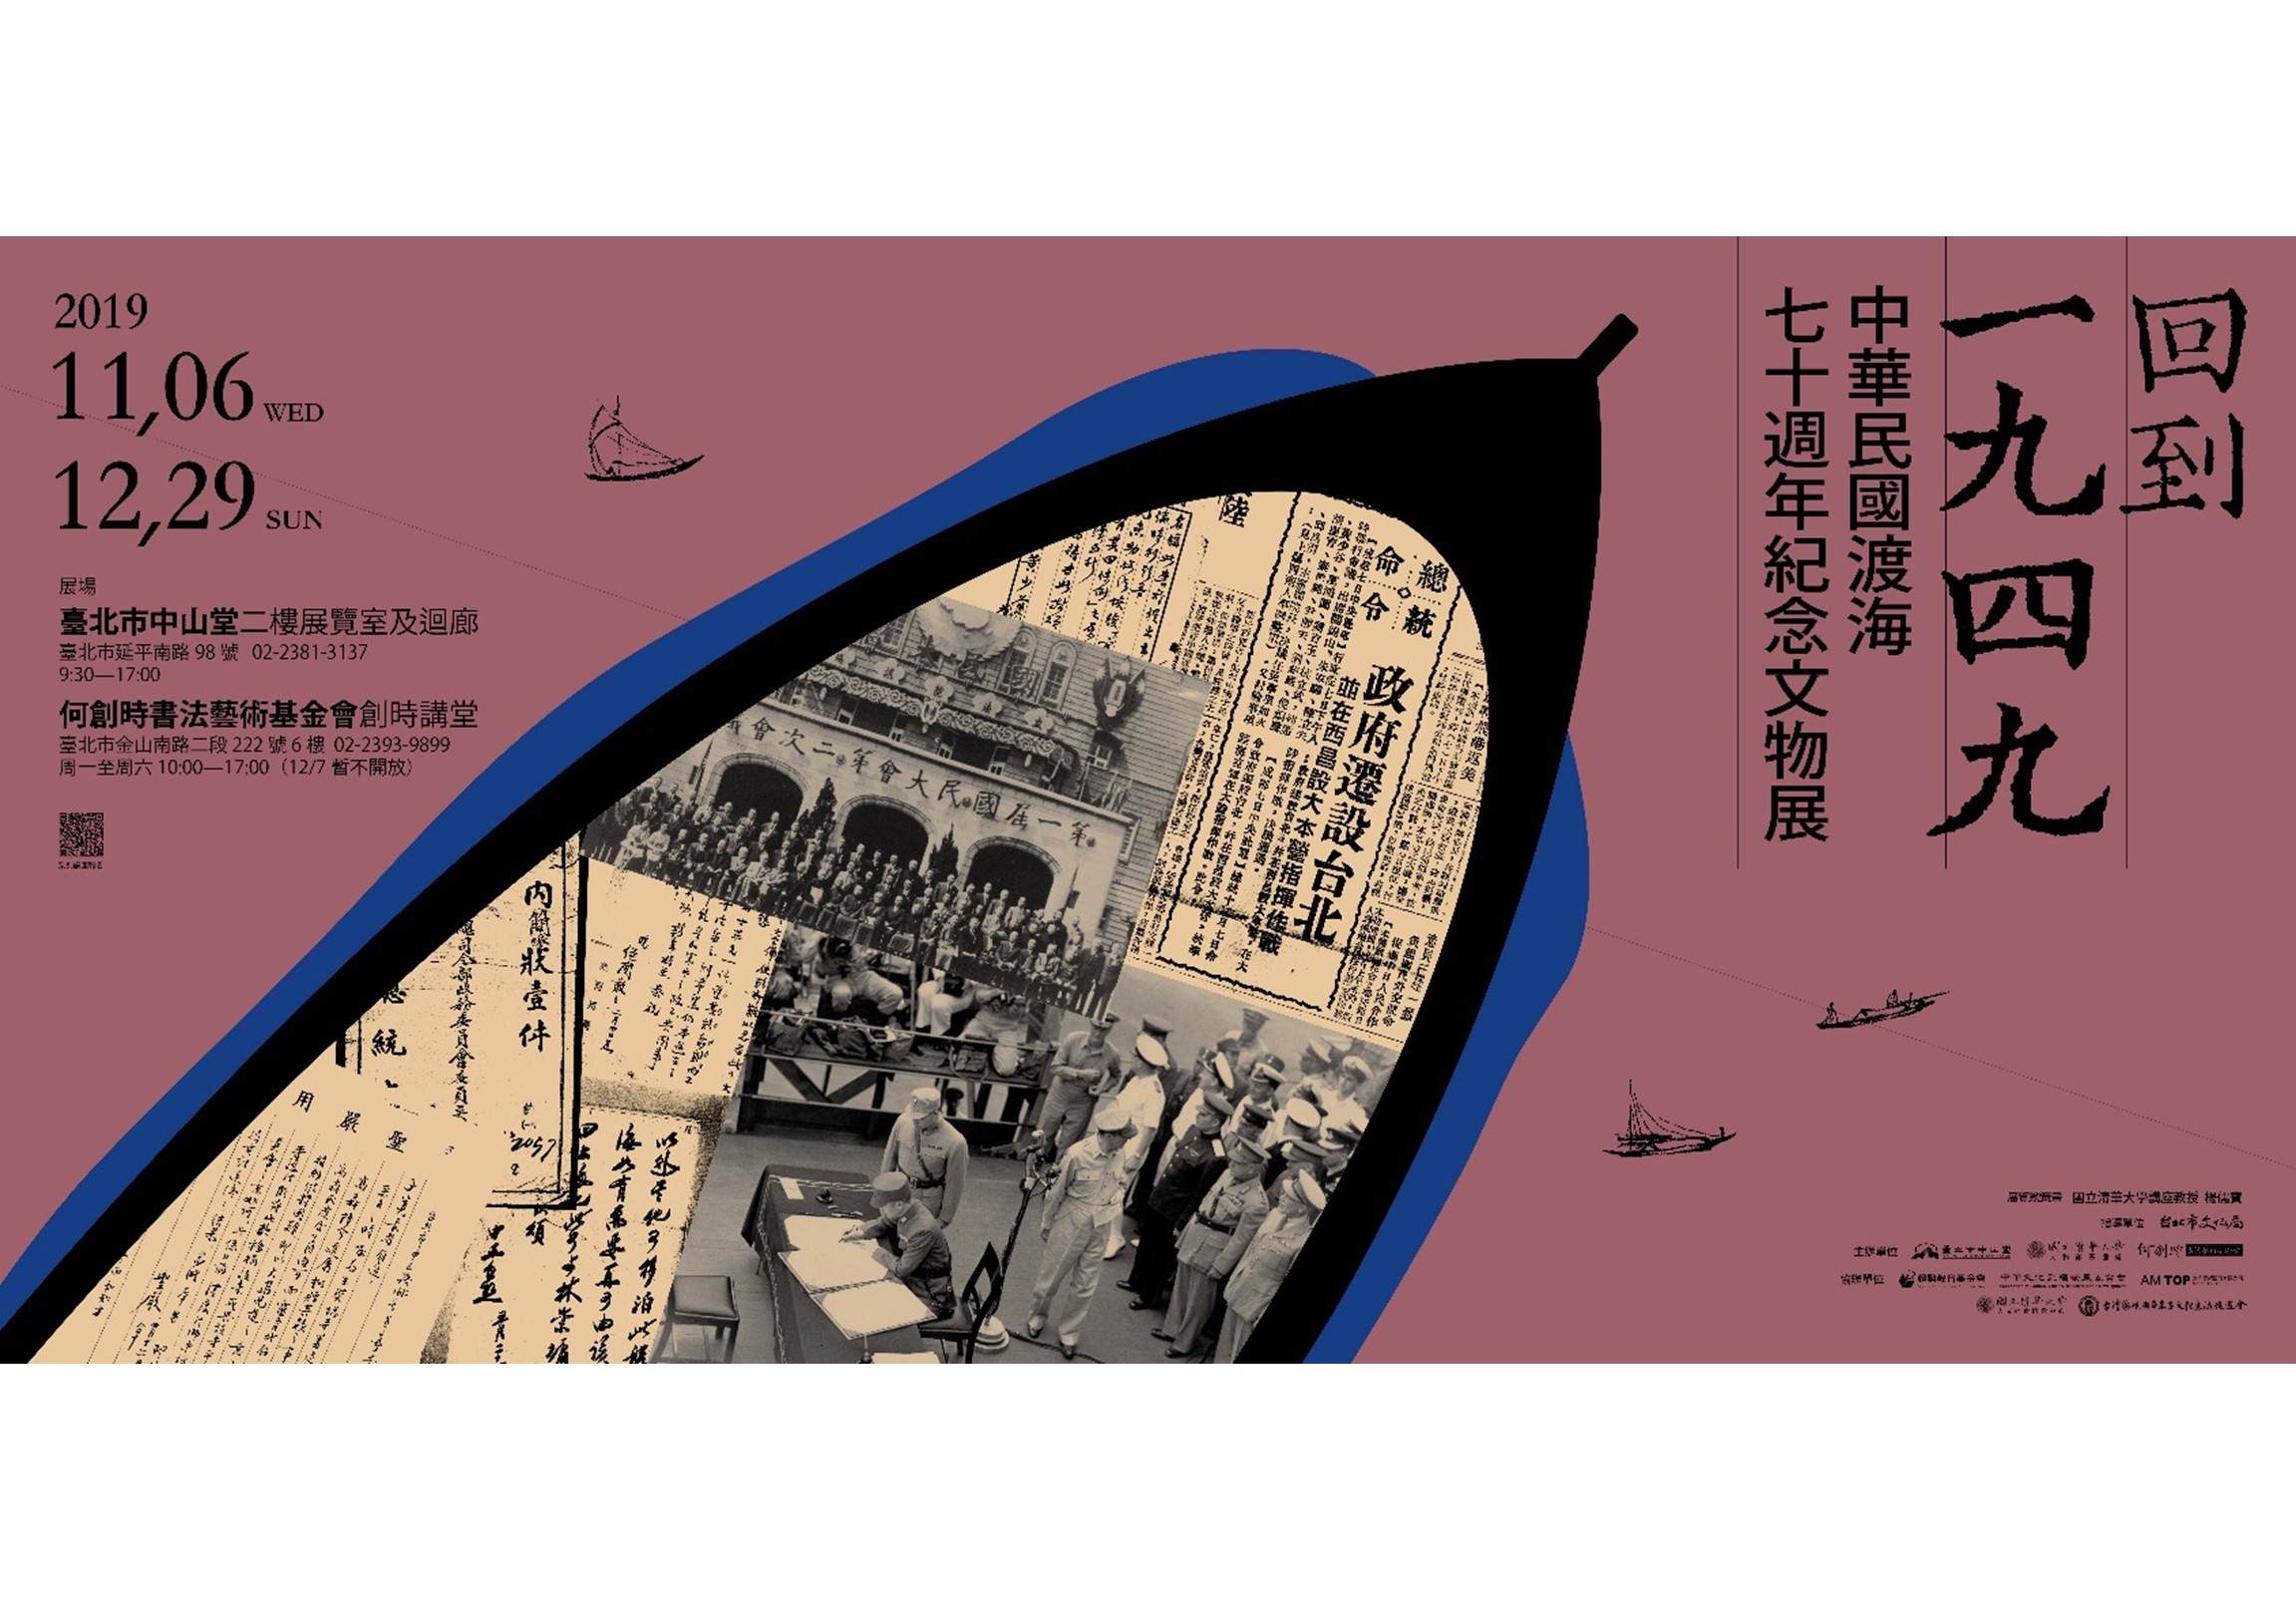 回到一九四九 — 中華民國渡海七十周年紀念文物展